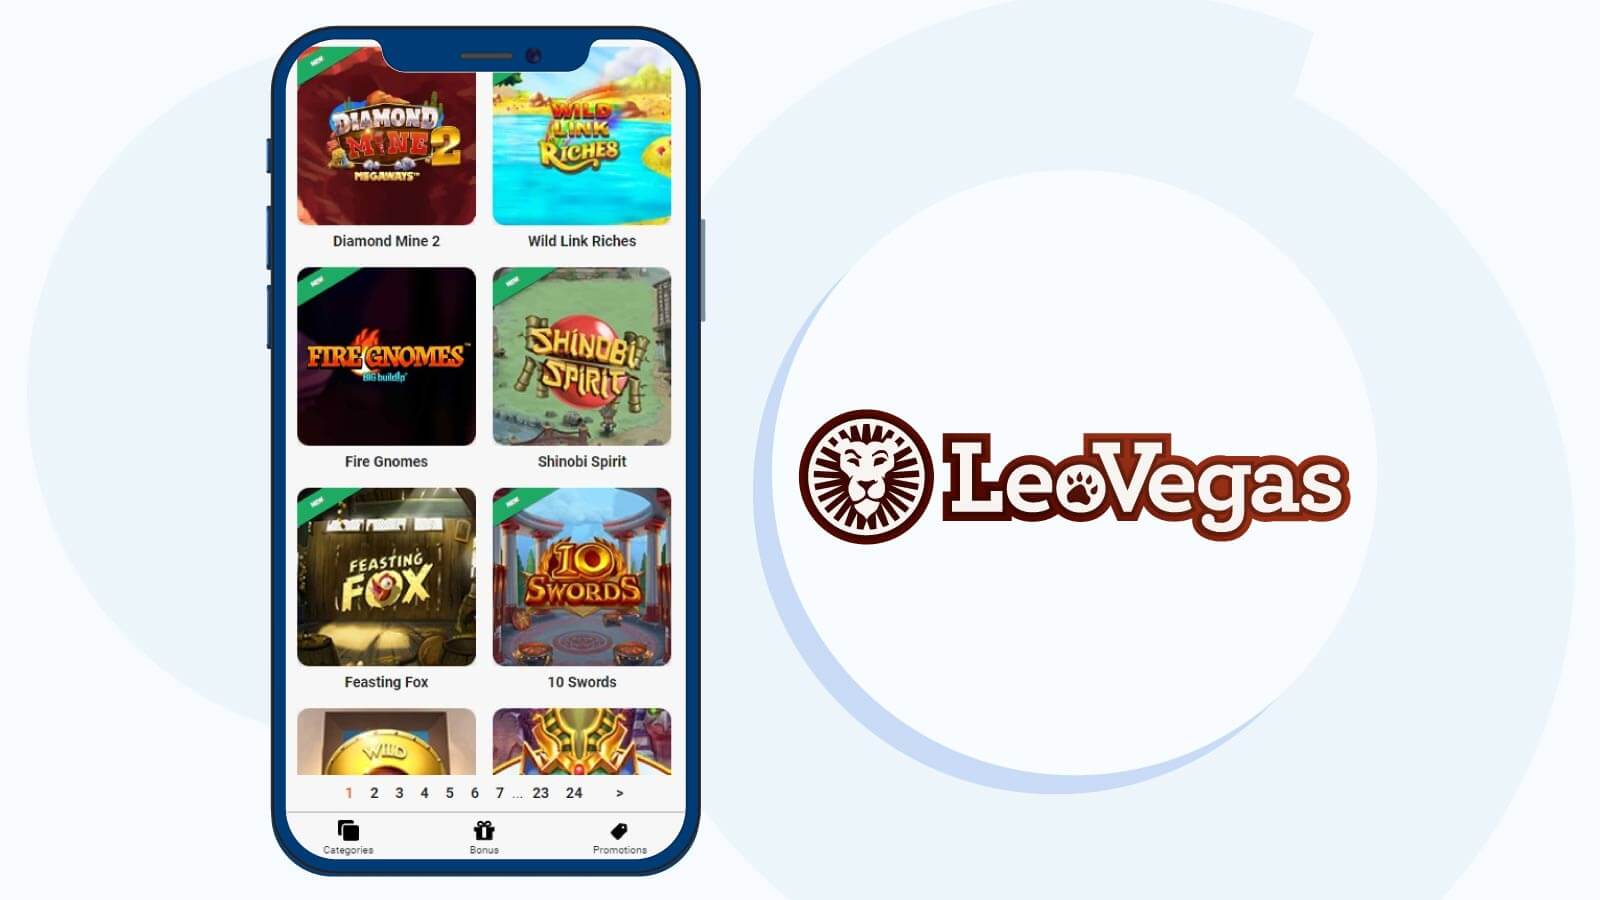 LeoVegas Casino – Exclusive Live Games